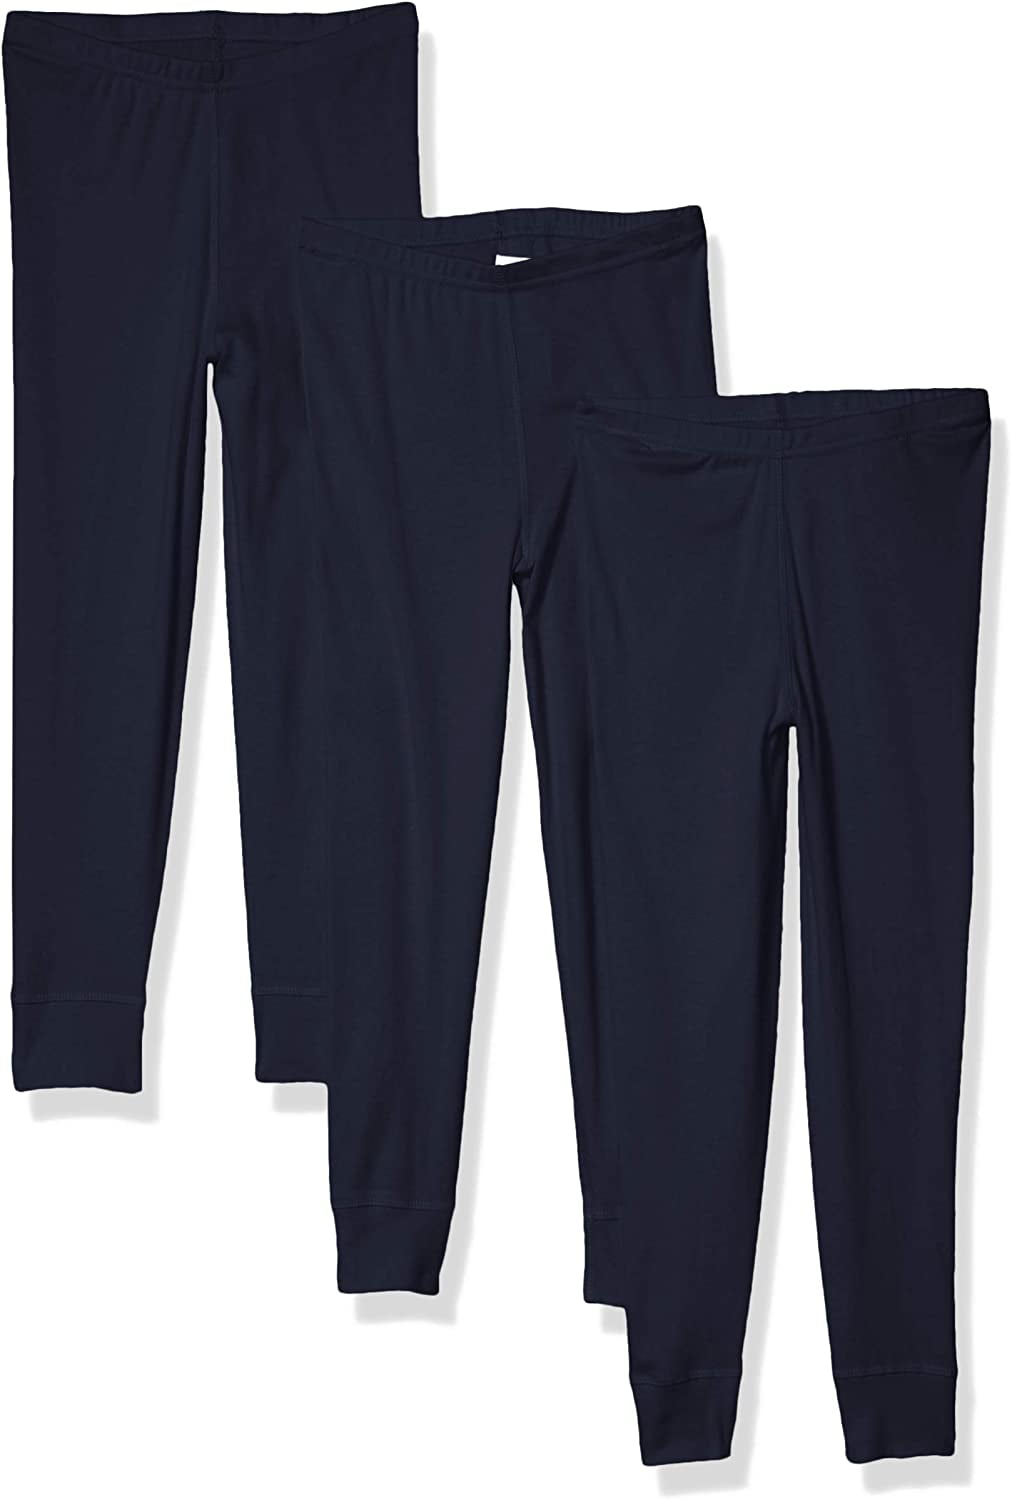 Aquaguard Girls' Baby Rib Pajama Pant (3 Pack) - Walmart.com